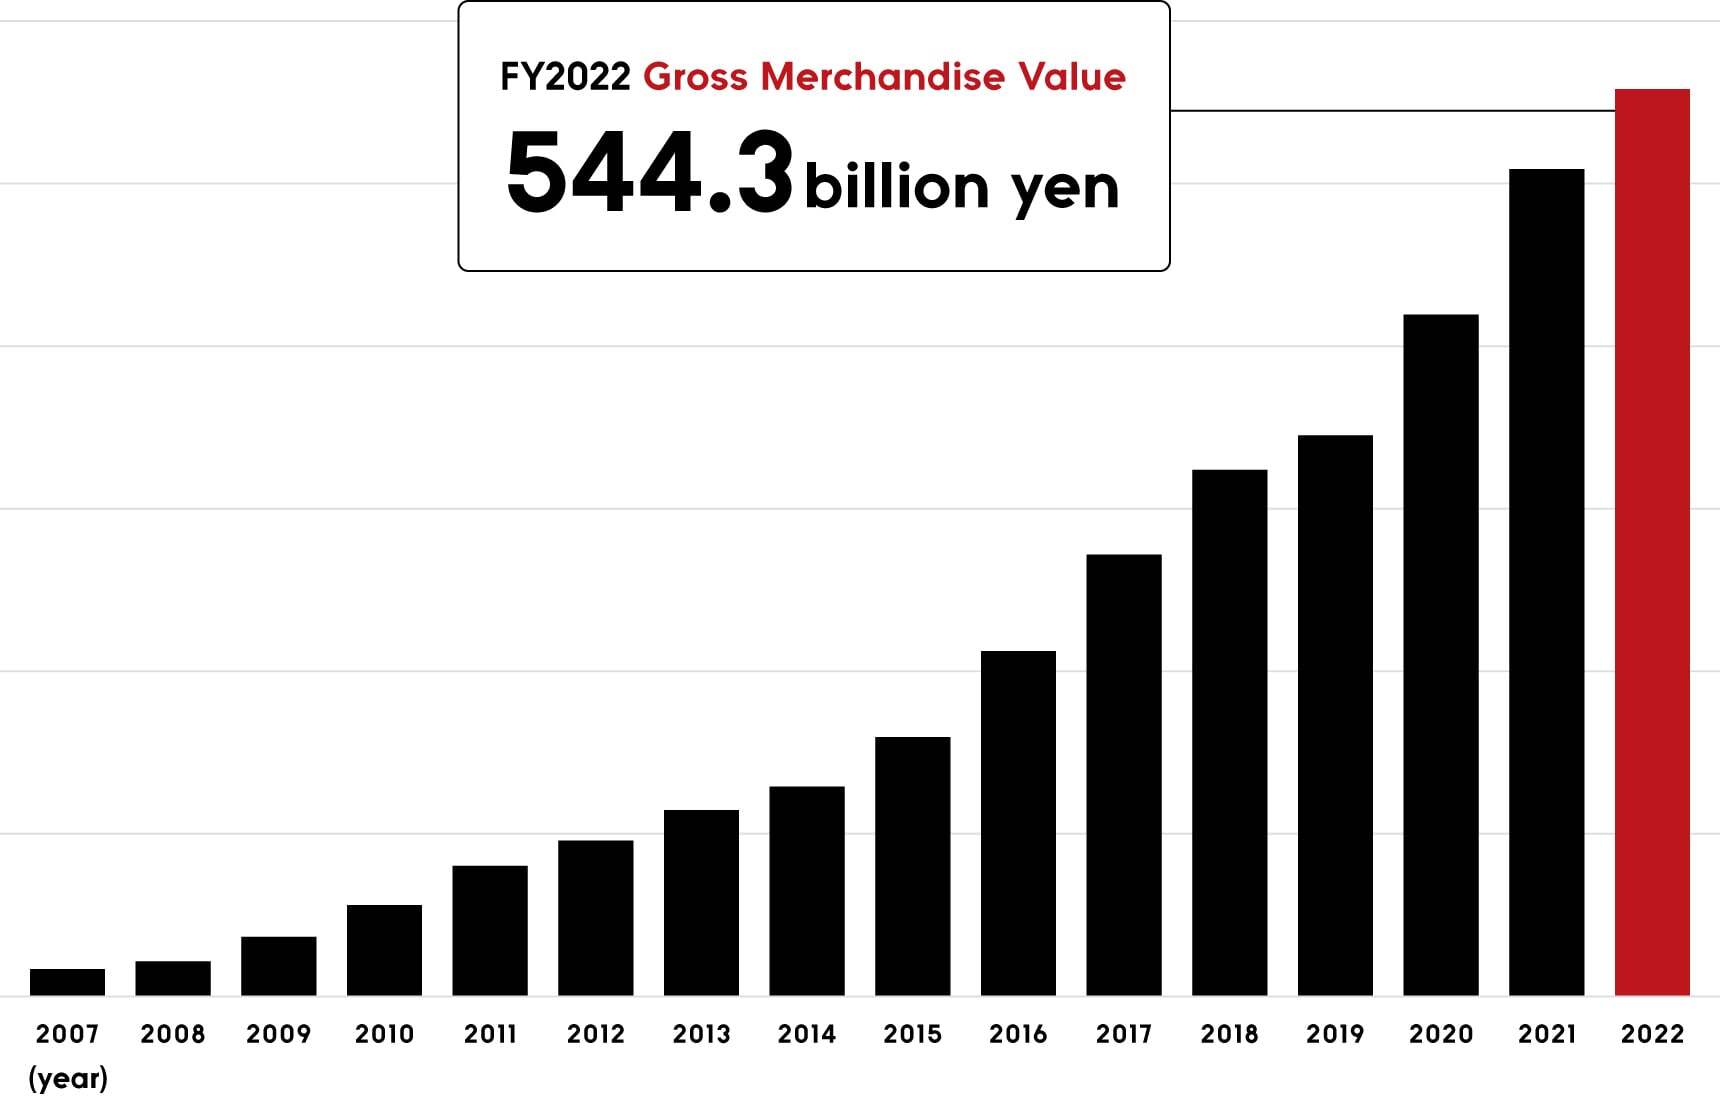 FY 2021 Gross Merchandise Value 508.8 billion yen